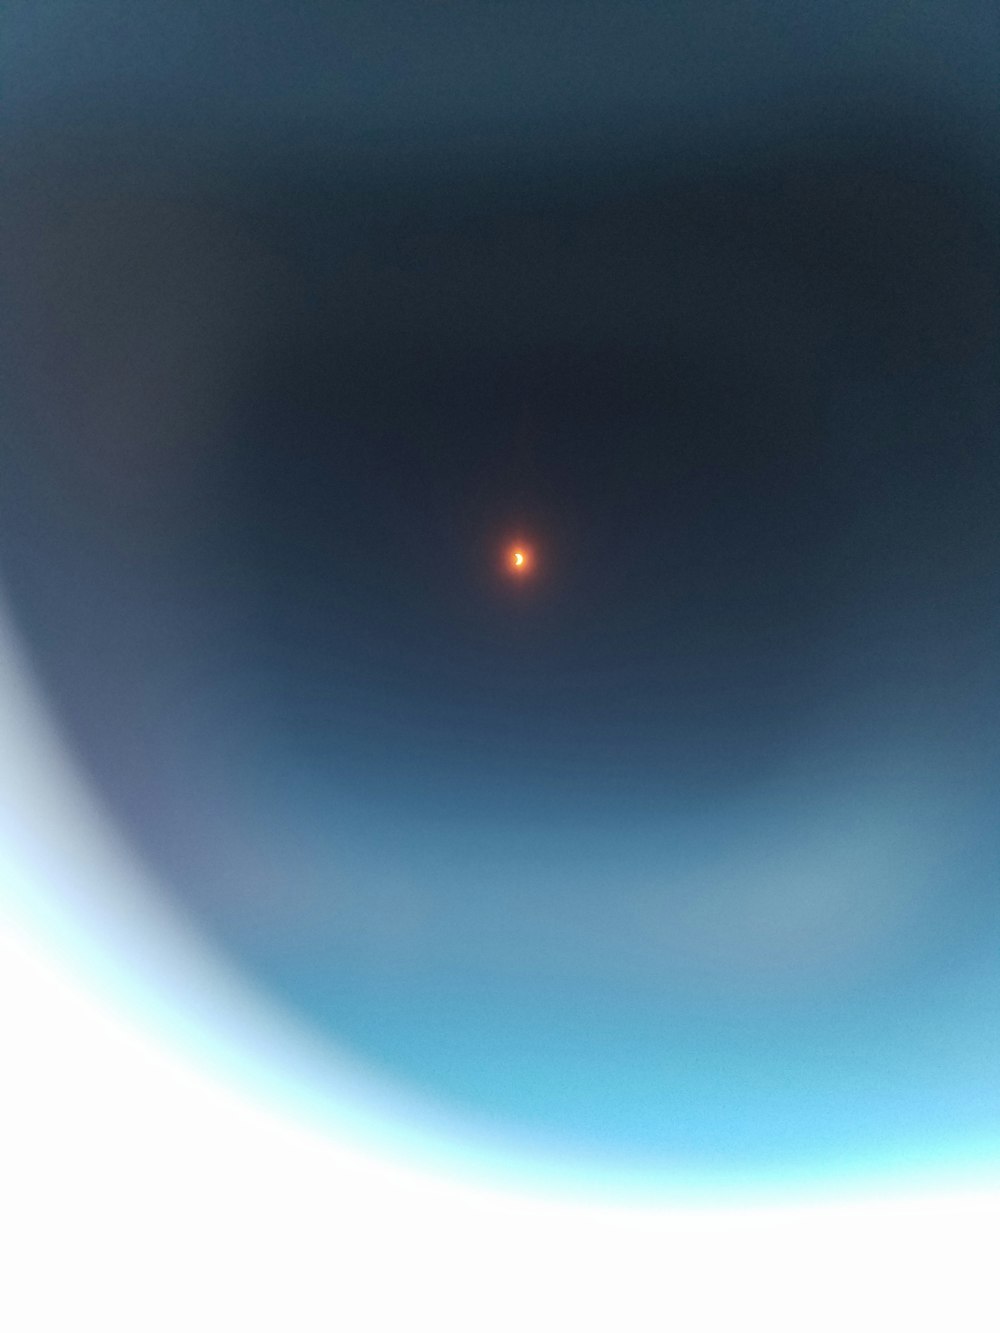 uma imagem de um objeto distante no céu